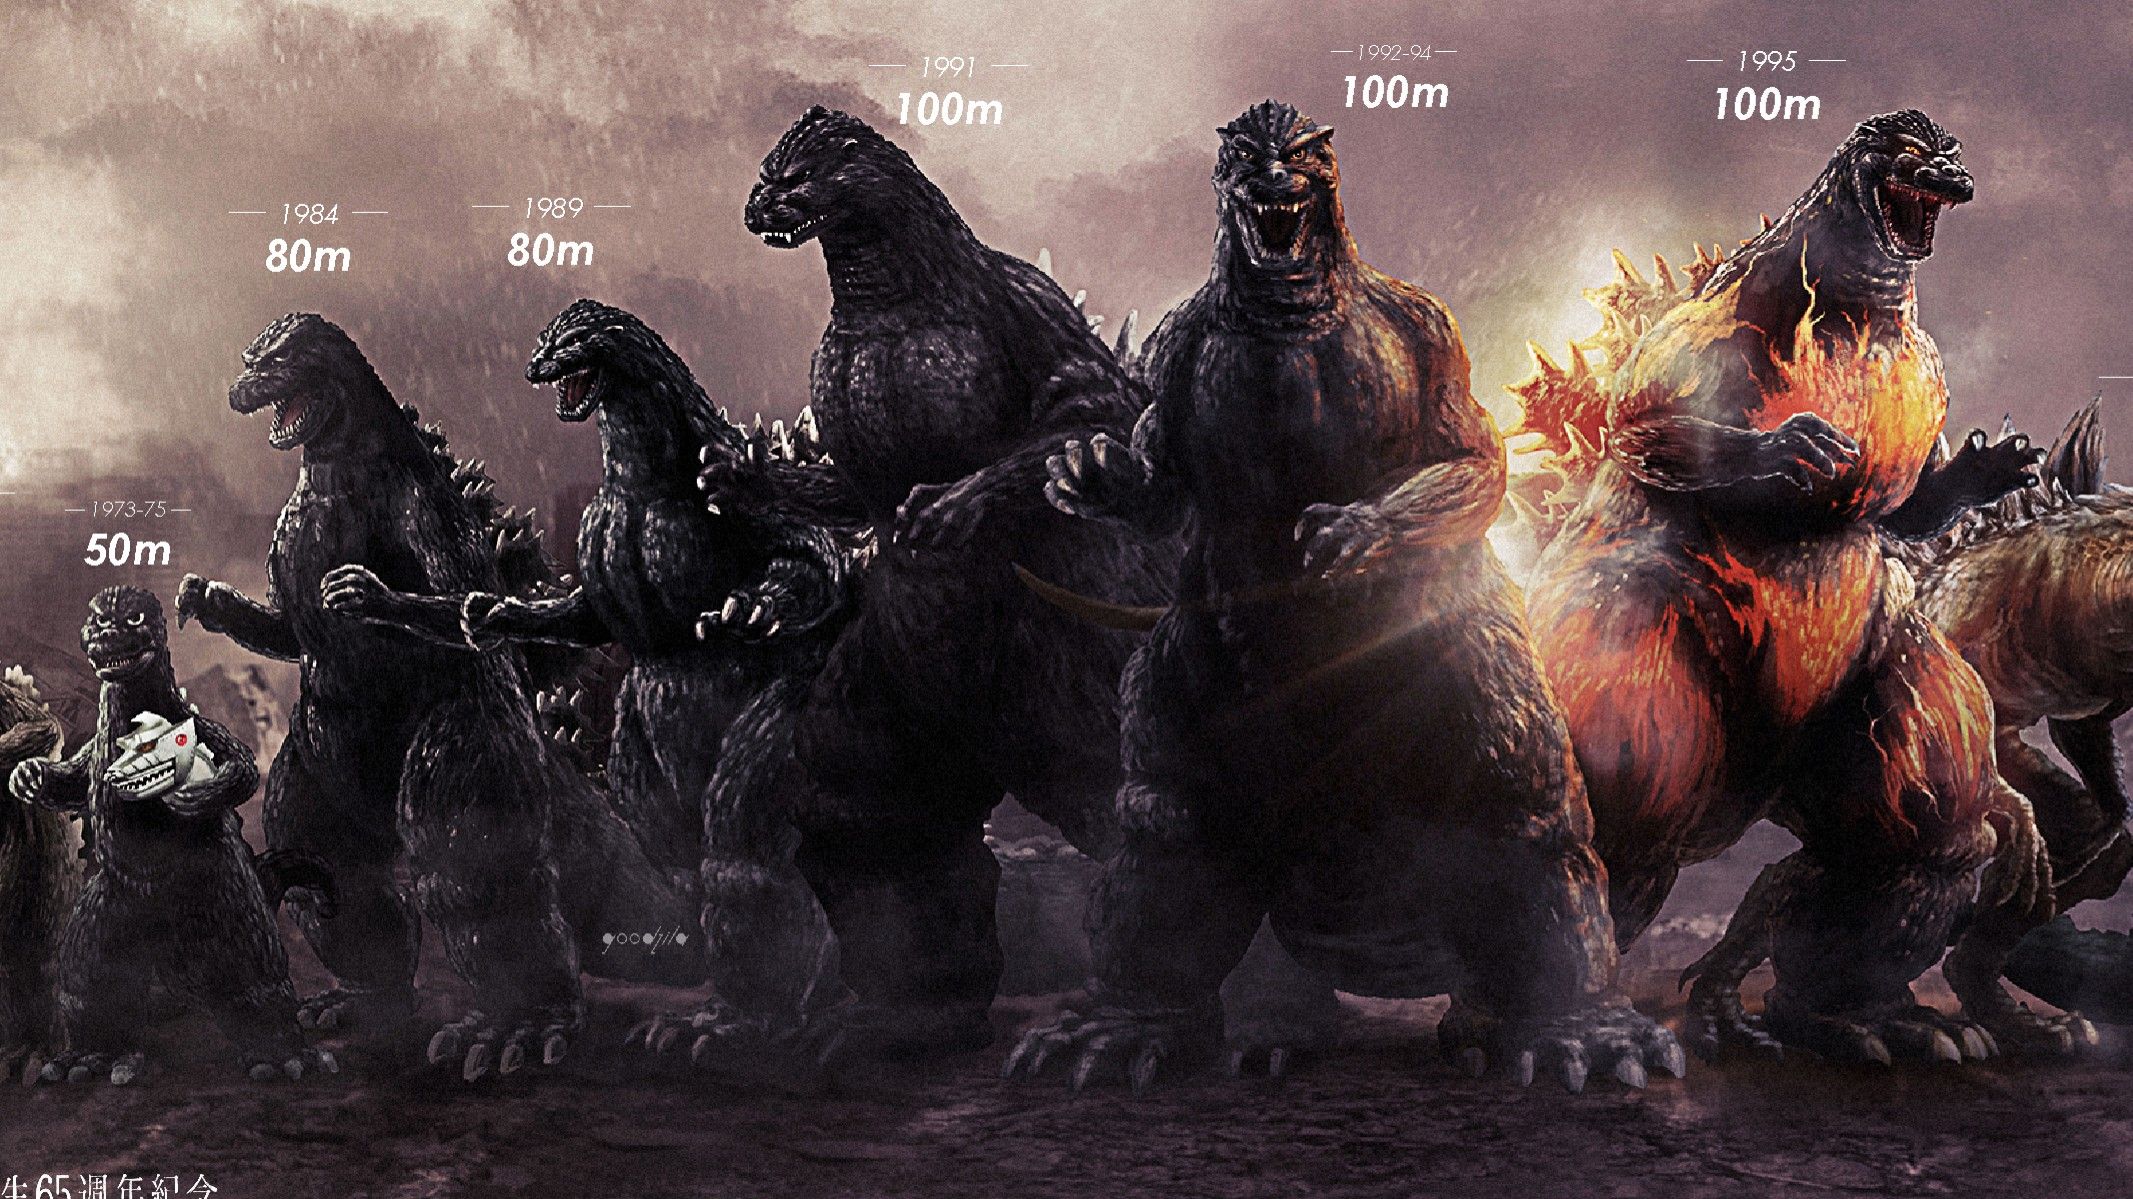 Godzilla King Monsters Heisei - Godzilla Size Comparison 1954 To 2019 - HD Wallpaper 